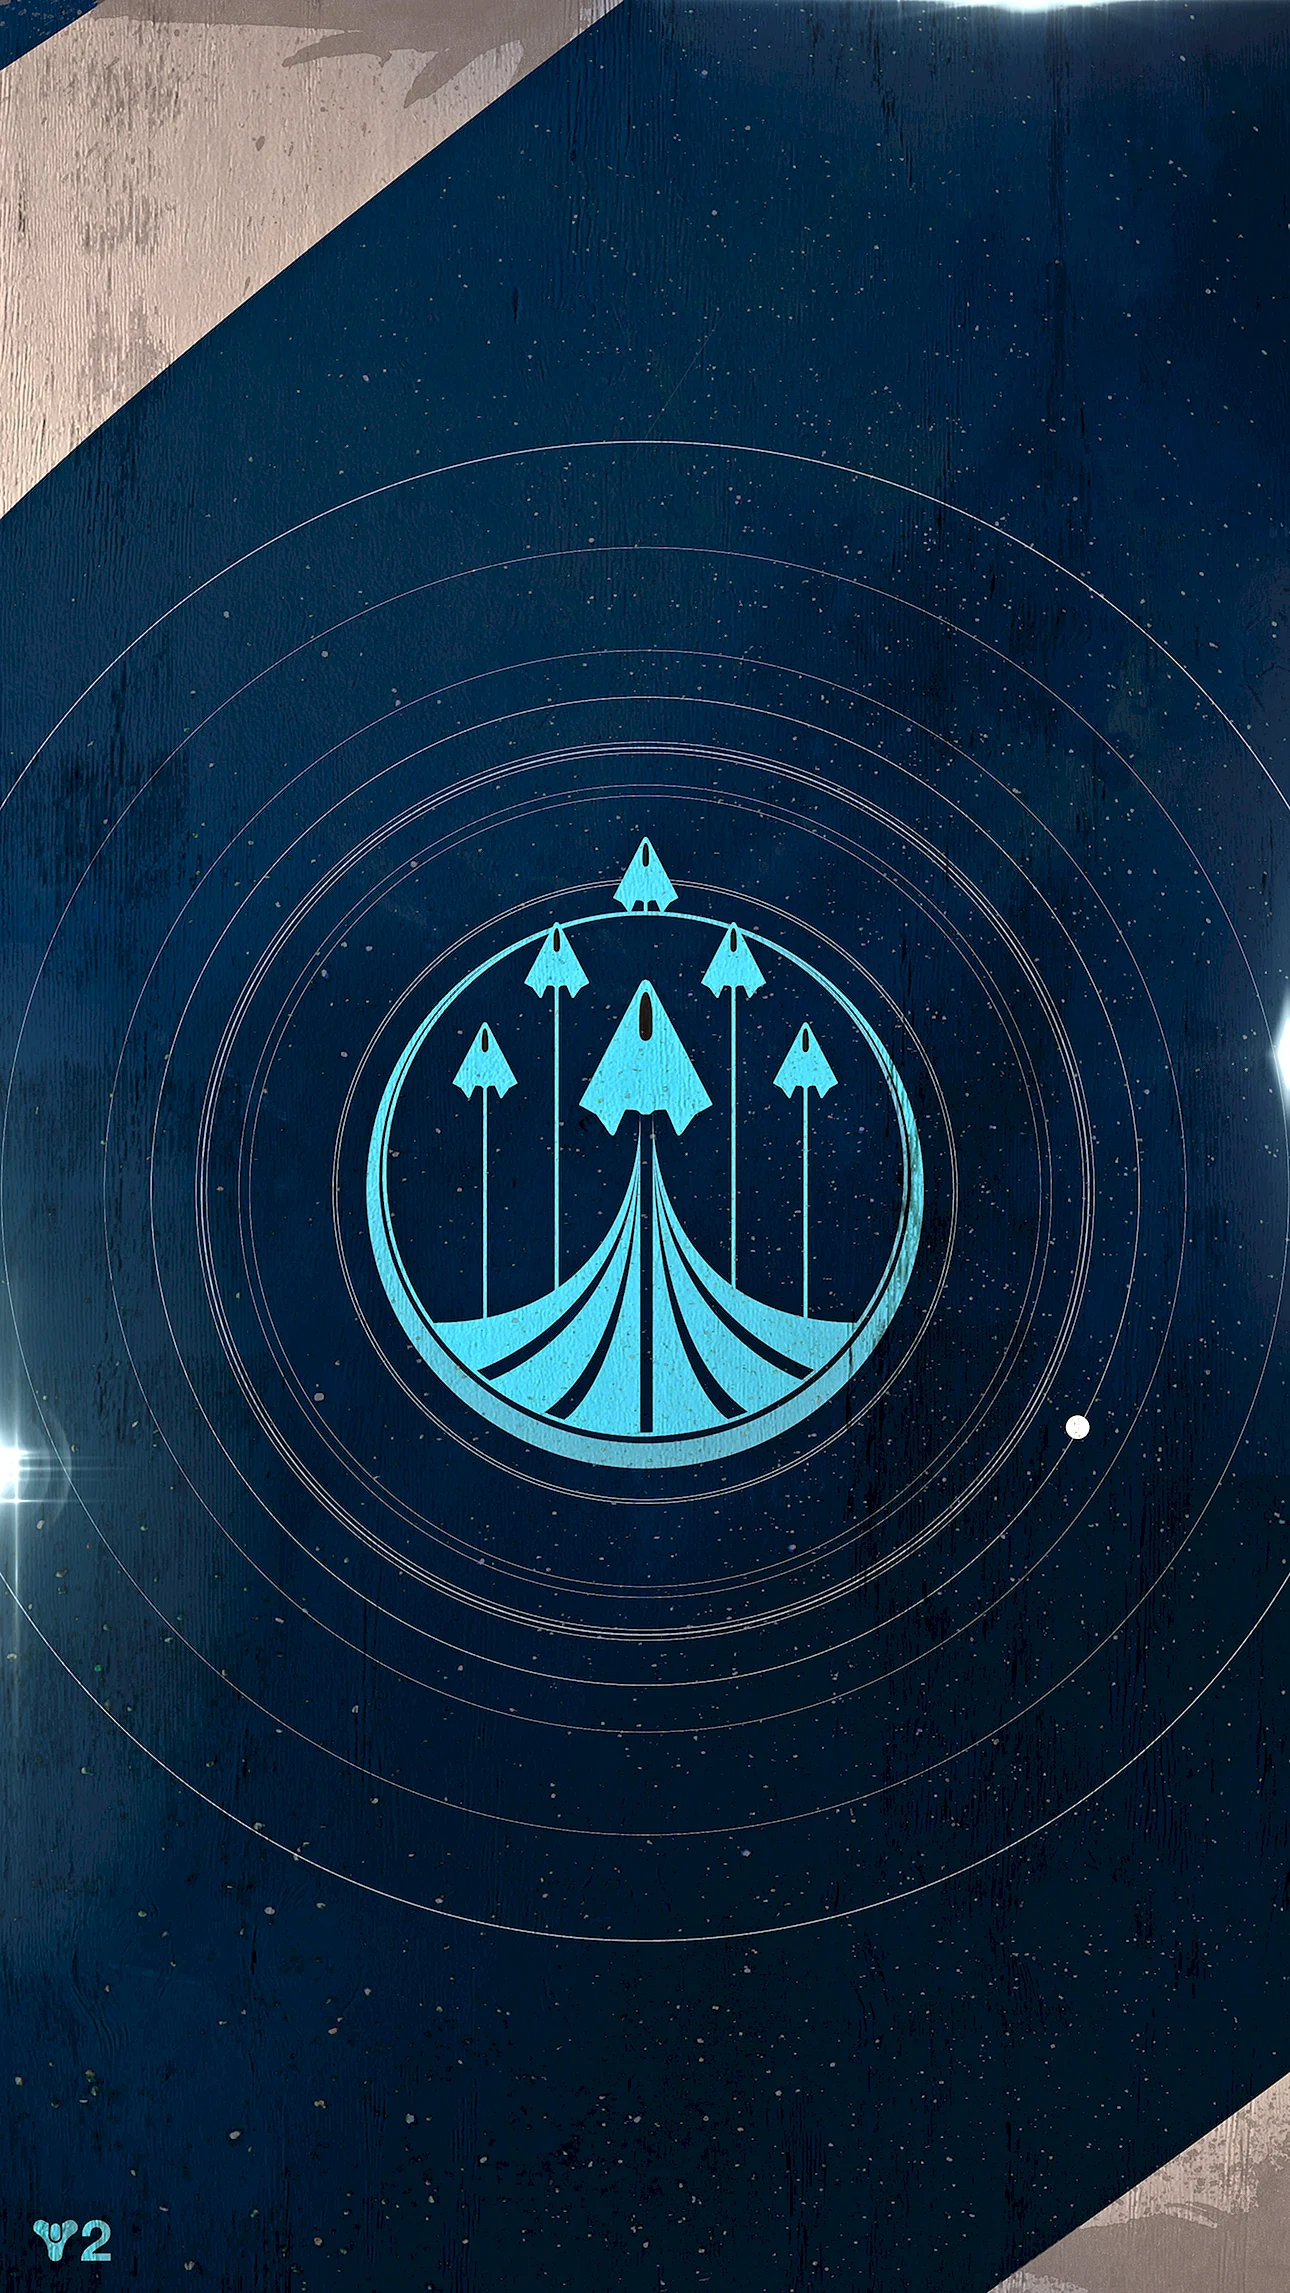 Destiny Raid Emblem Wallpaper For iPhone